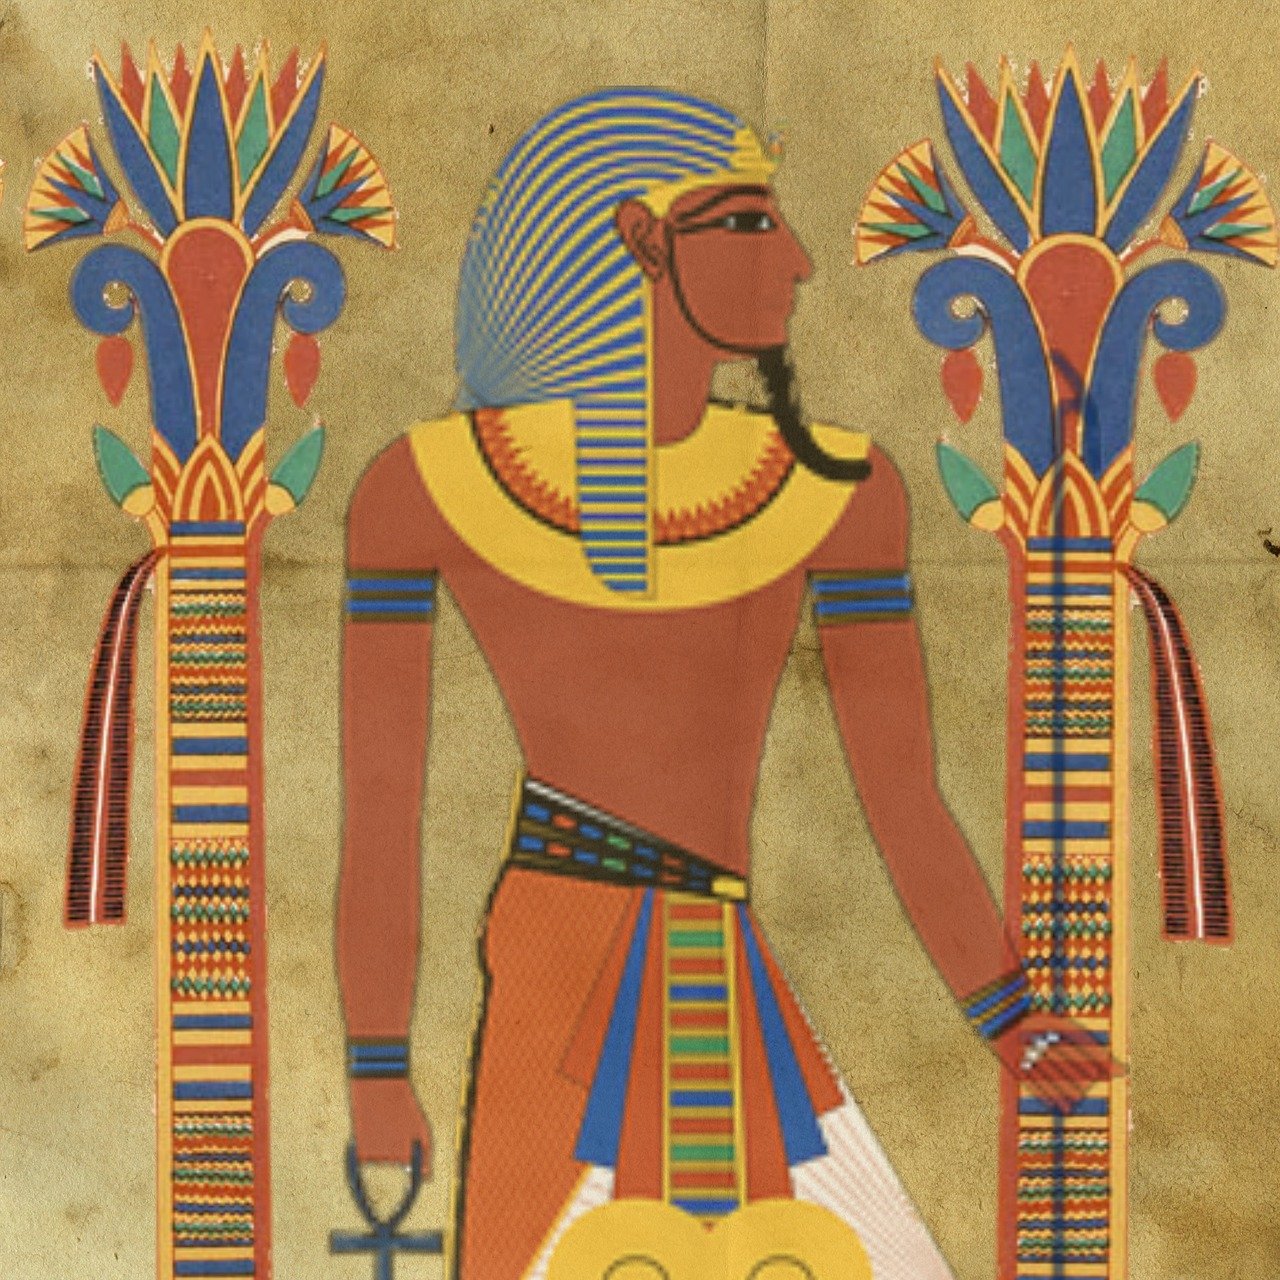 Древний египет. история, культура. древние цивилизации.